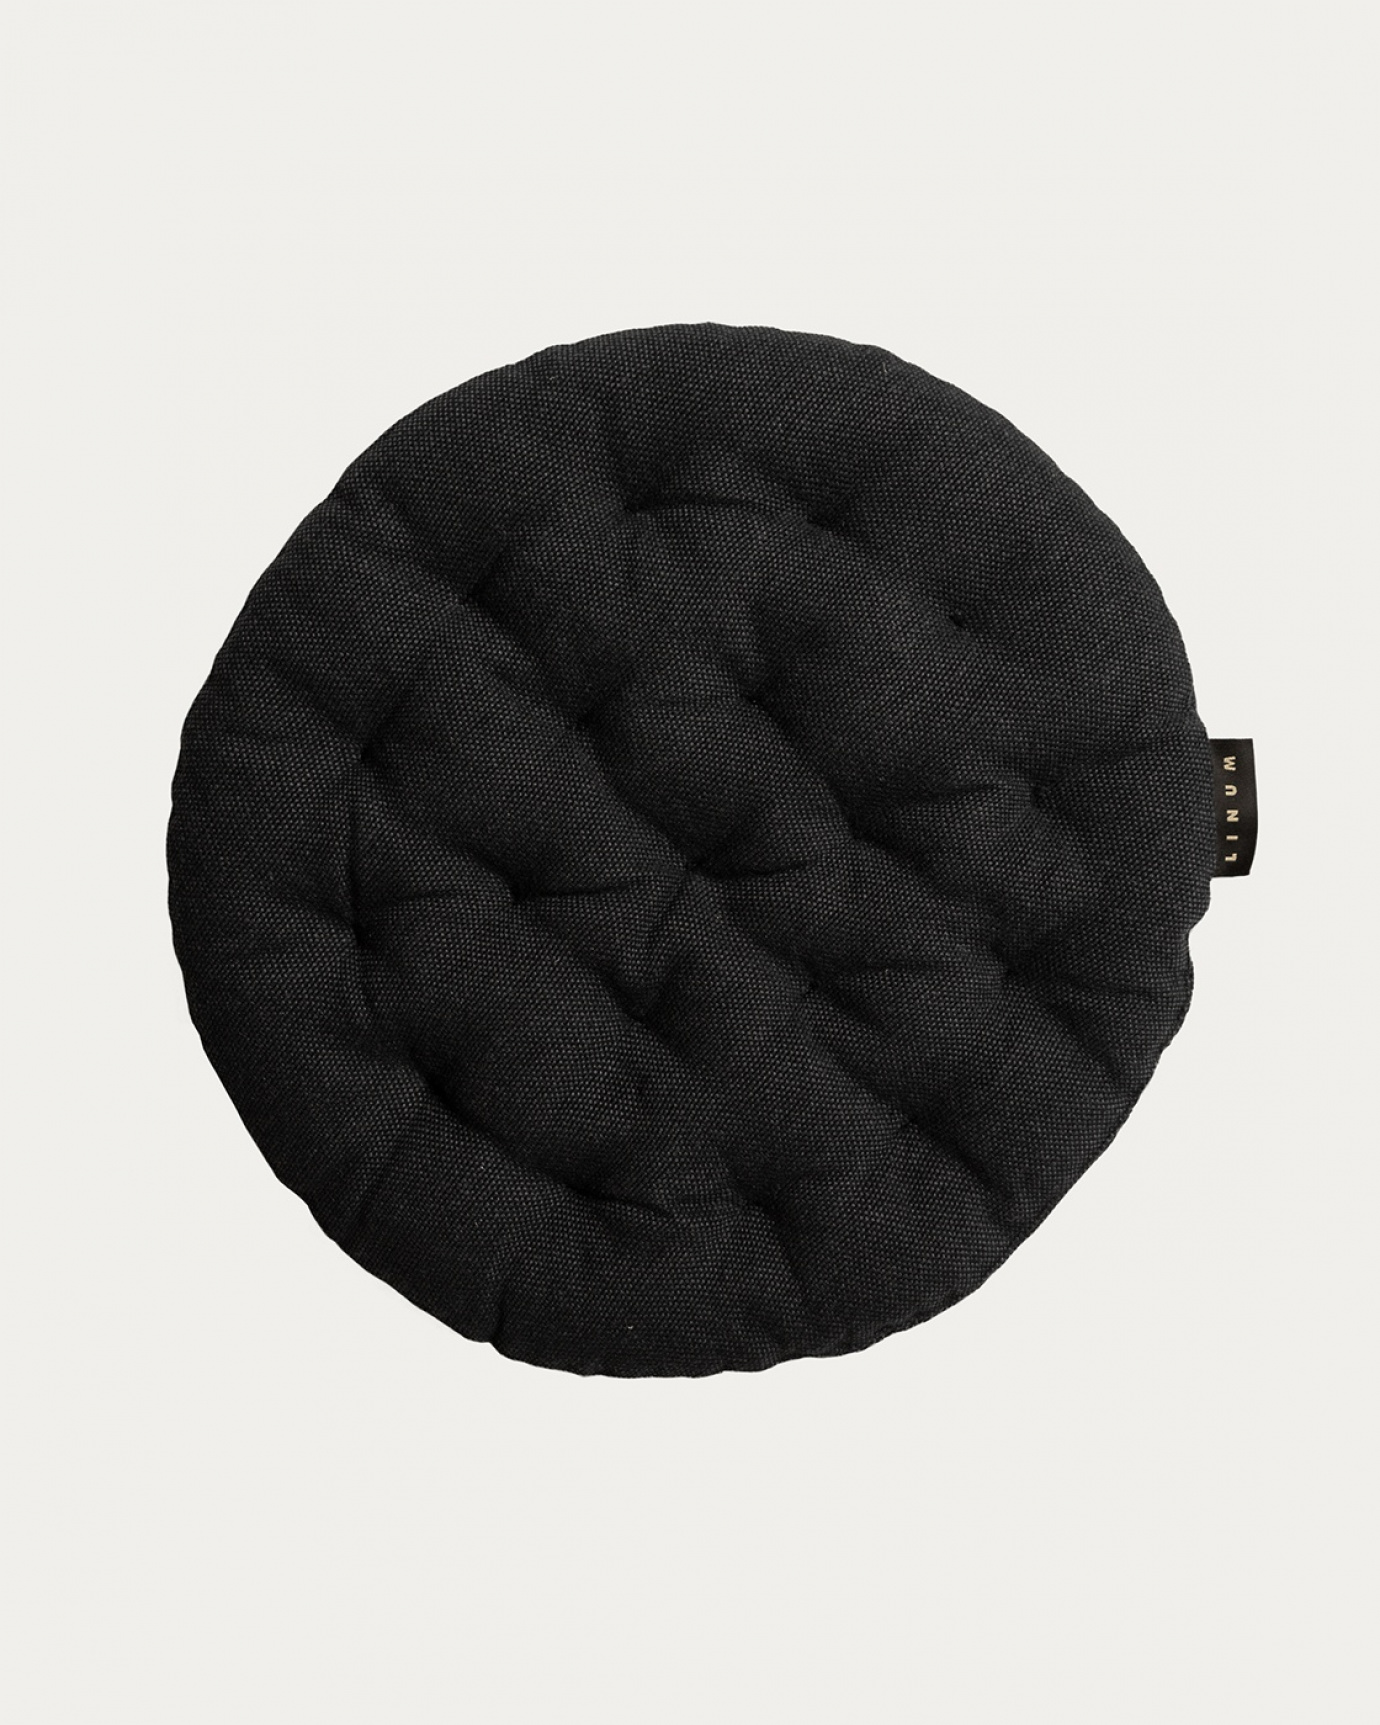 Produktbild schwarze melange PEPPER Sitzkissen aus weicher Baumwolle mit Füllung aus recyceltem Polyester von LINUM DESIGN. Größe ø37 cm.